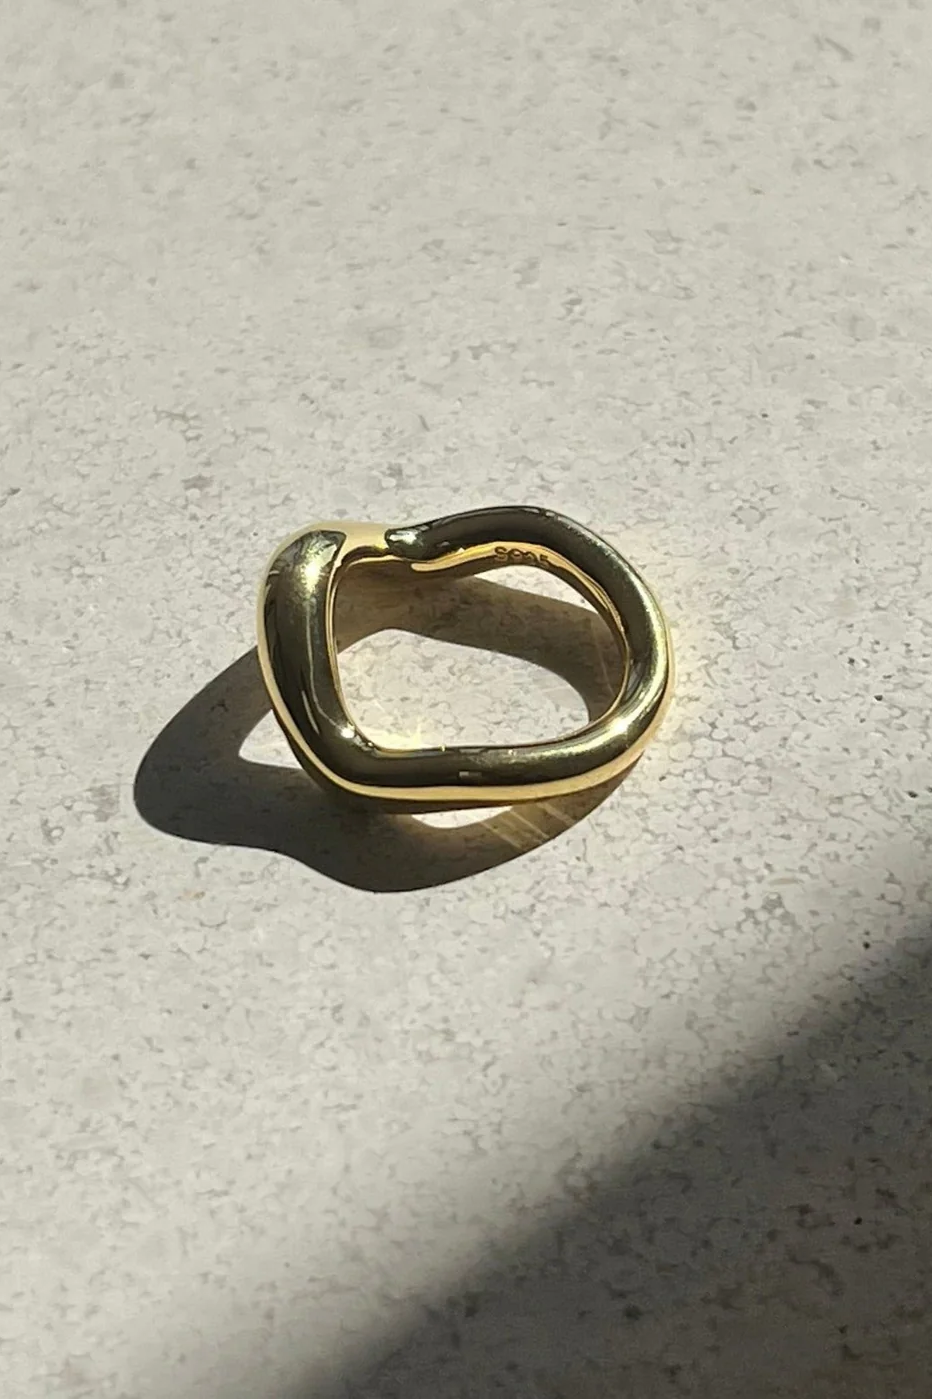 Wabi Sabi Ring - Gold